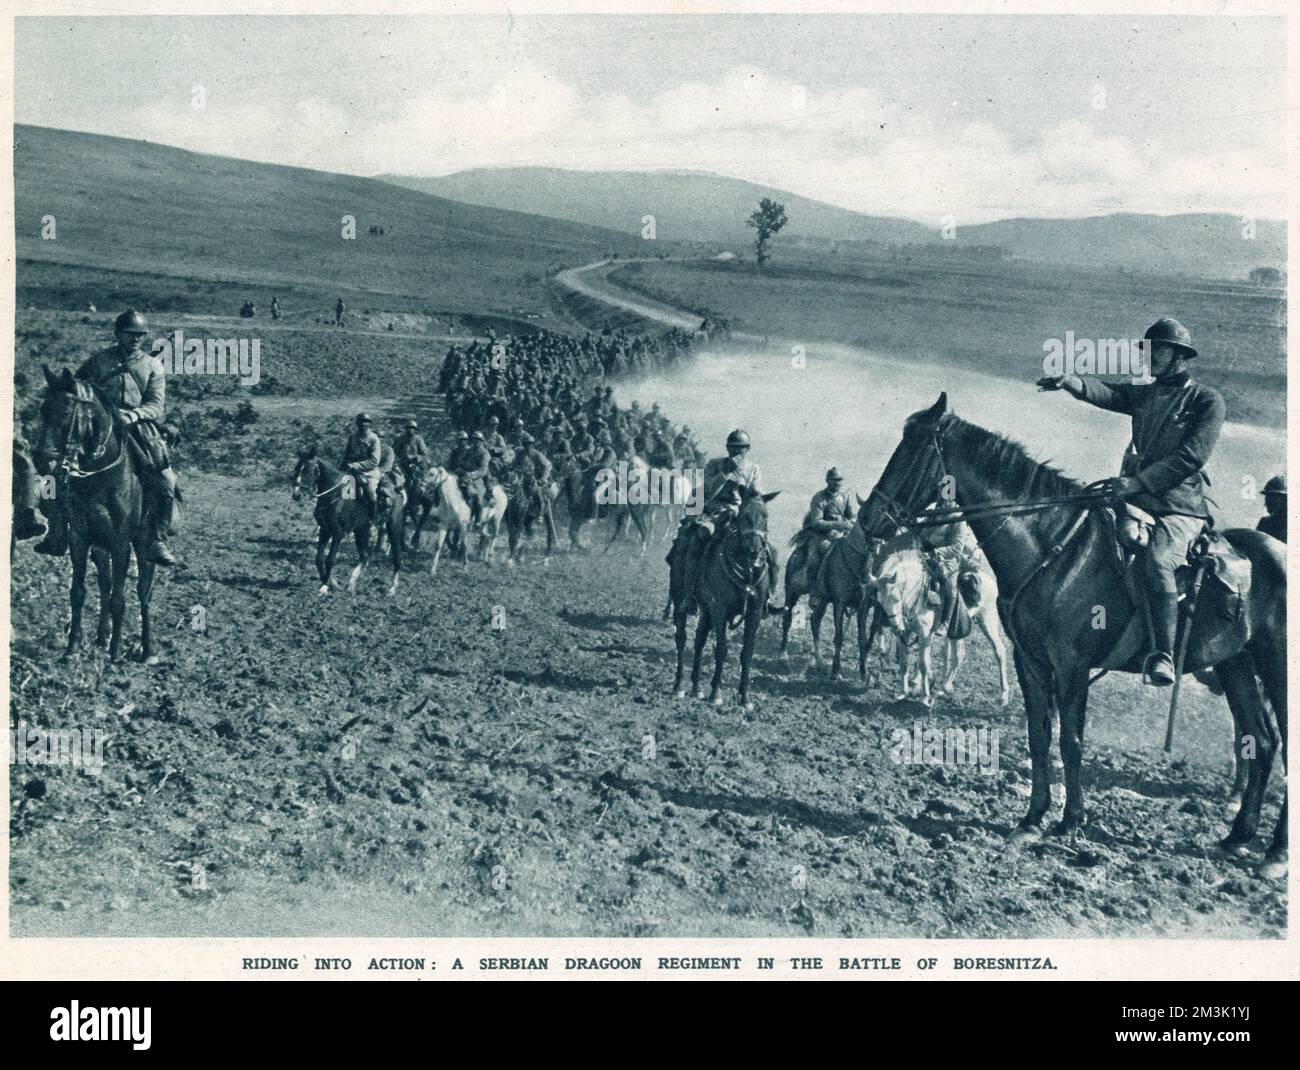 Un régiment de dragons serbes, faisant partie de l'armée alliée basée dans le port grec de Salonika, est photographié pour repousser une attaque de l'armée bulgare, octobre 1916. Au début de la guerre, l'armée serbe avait résisté avec succès à l'invasion de l'empire austro-hongrois, mais une offensive combinée des puissances centrales, y compris la Bulgarie nouvellement alliée, a forcé le gouvernement et l'armée serbes à s'échapper dans l'Albanie voisine et à s'exiler en décembre 1915. Banque D'Images